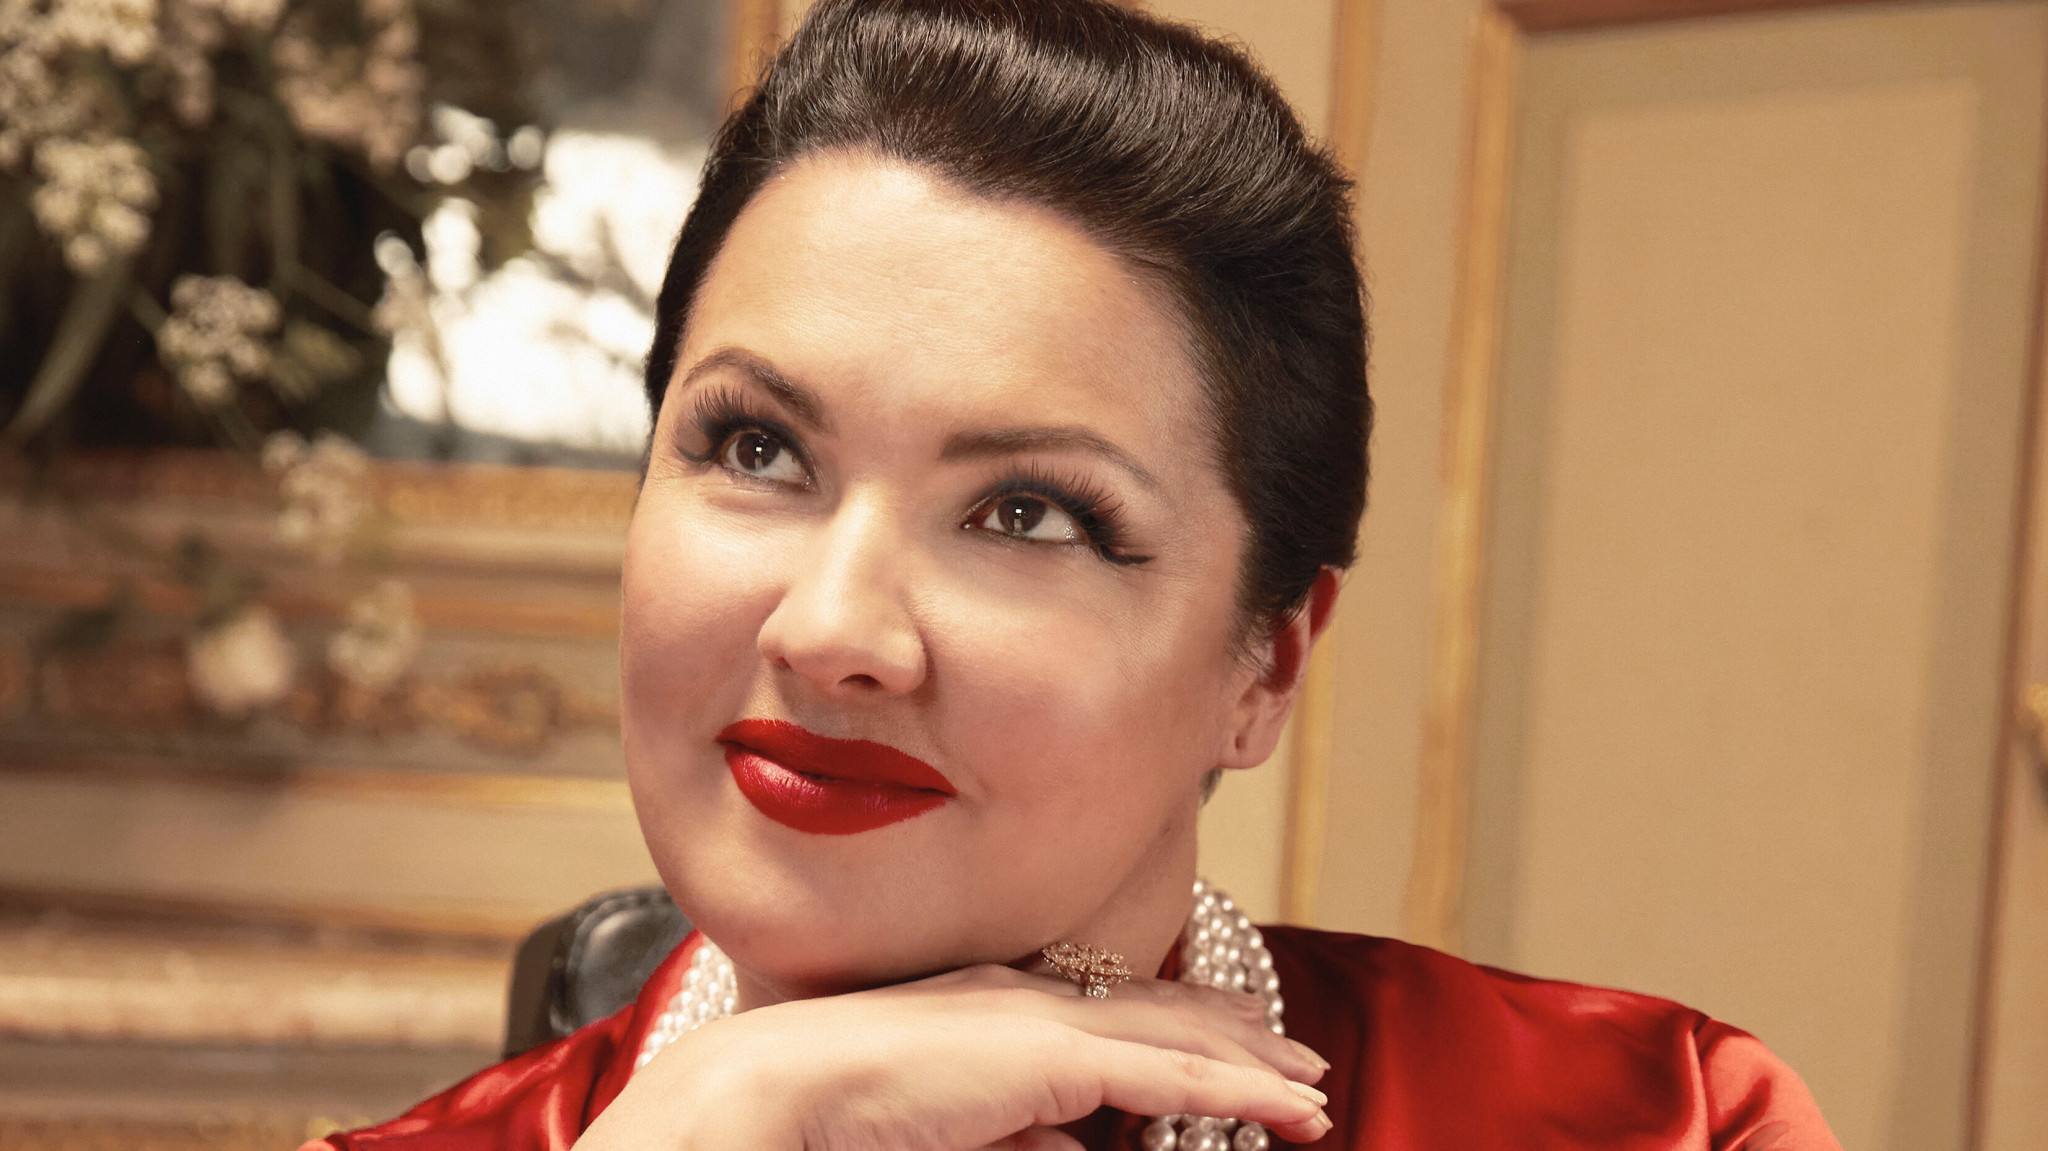 Anna Netrebko Releases 'Amata dalle tenebre' – The Opera Star’s First Solo Album in Five Years